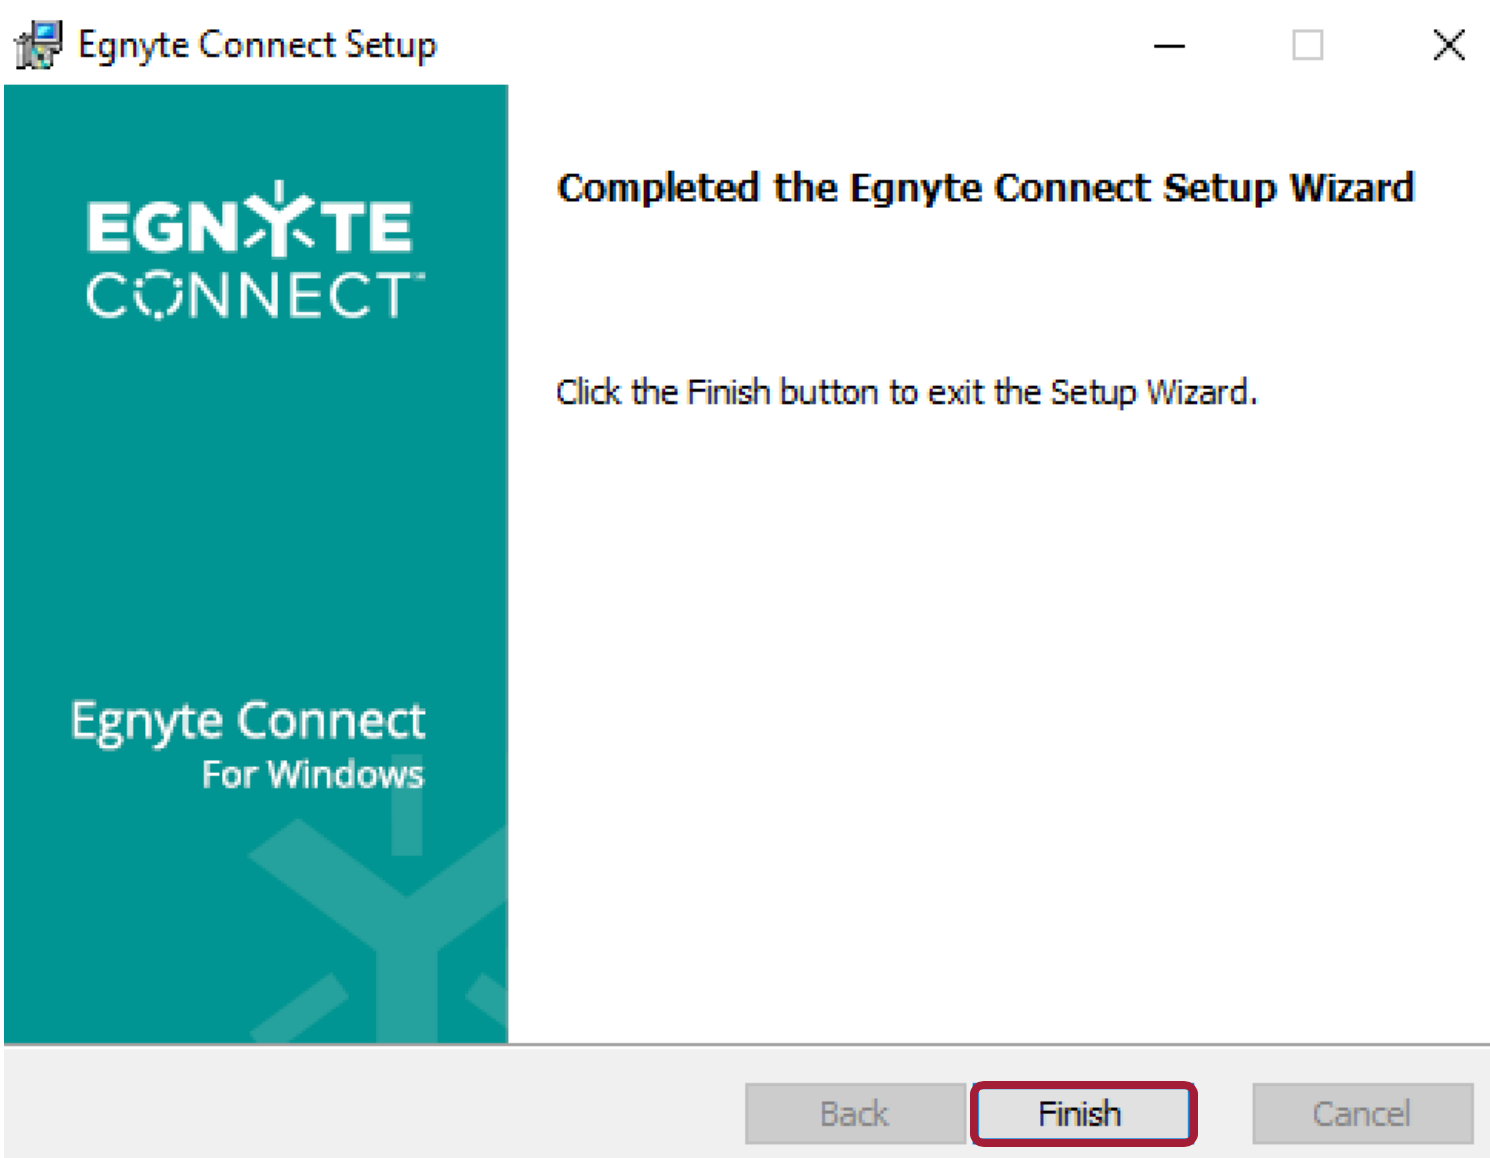 egnyte desktop sync vs connect vs web edit